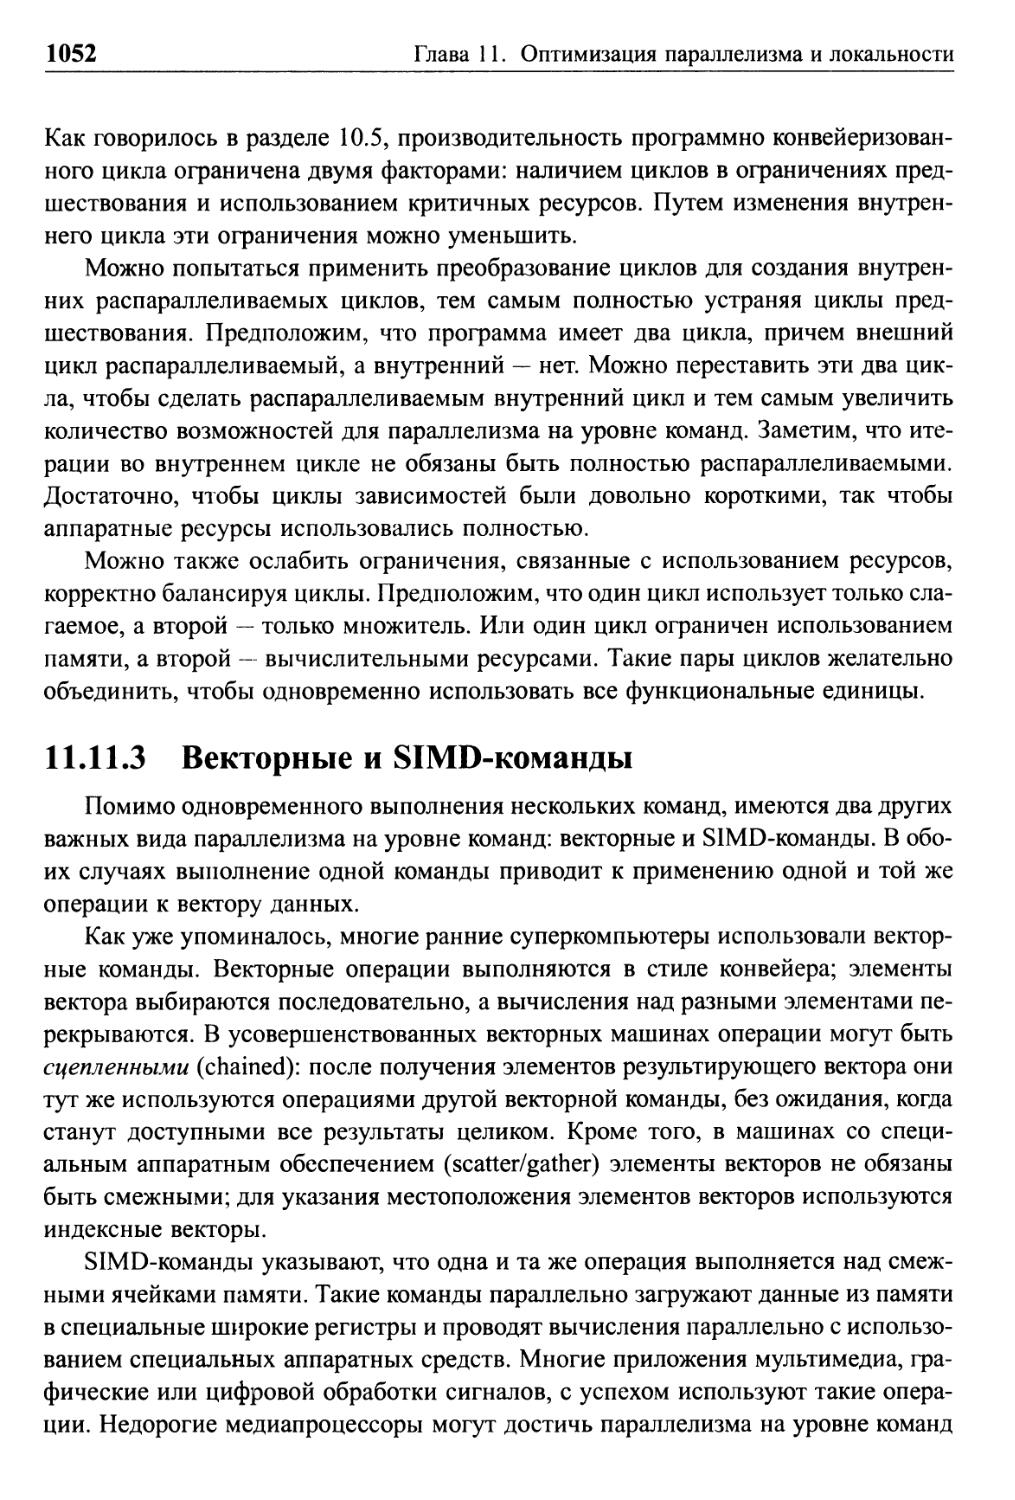 11.11.3 Векторные и SIMD-команды